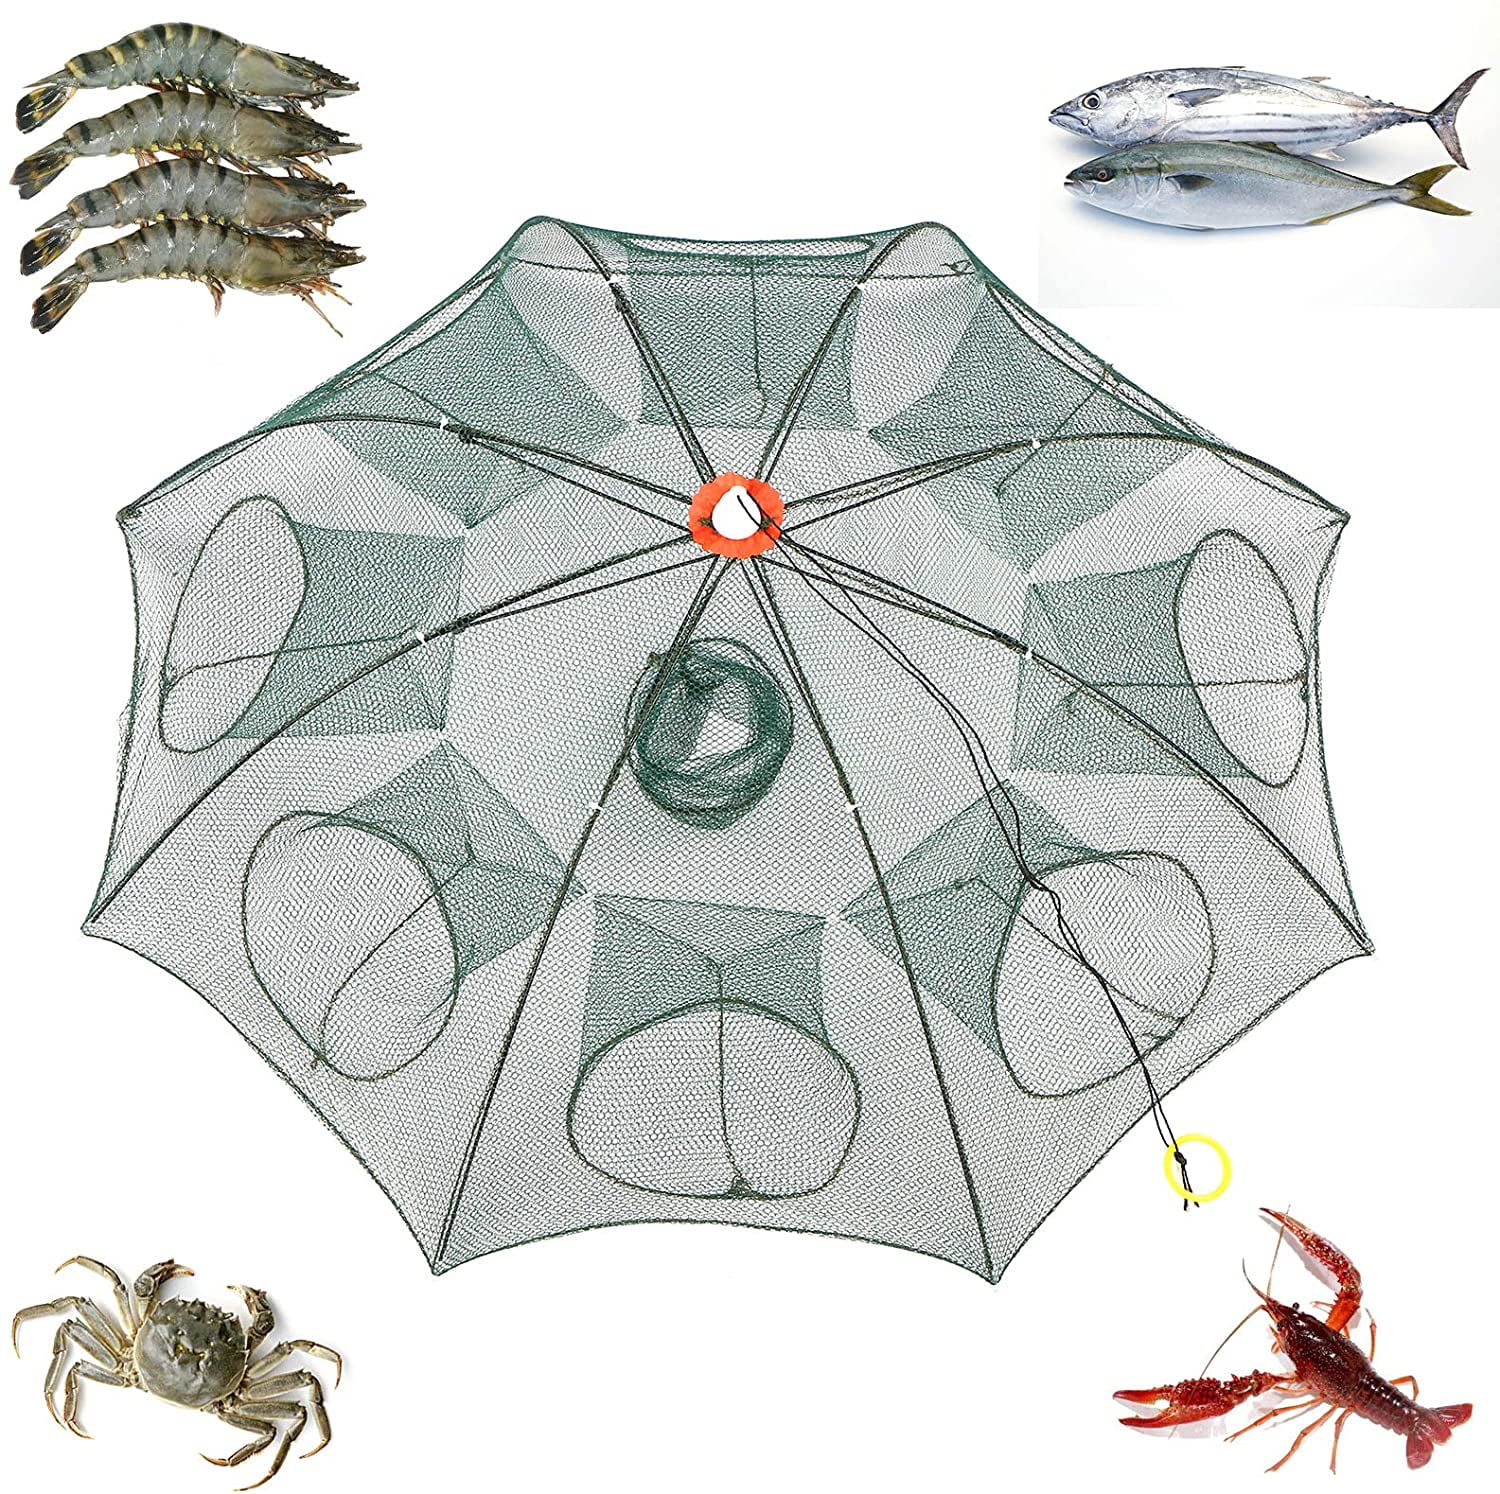 Details about   1Pcs Fishing Bait Trap Net Cast Dip Cage Crab Minnow Crawdad Shrimp Foldable 